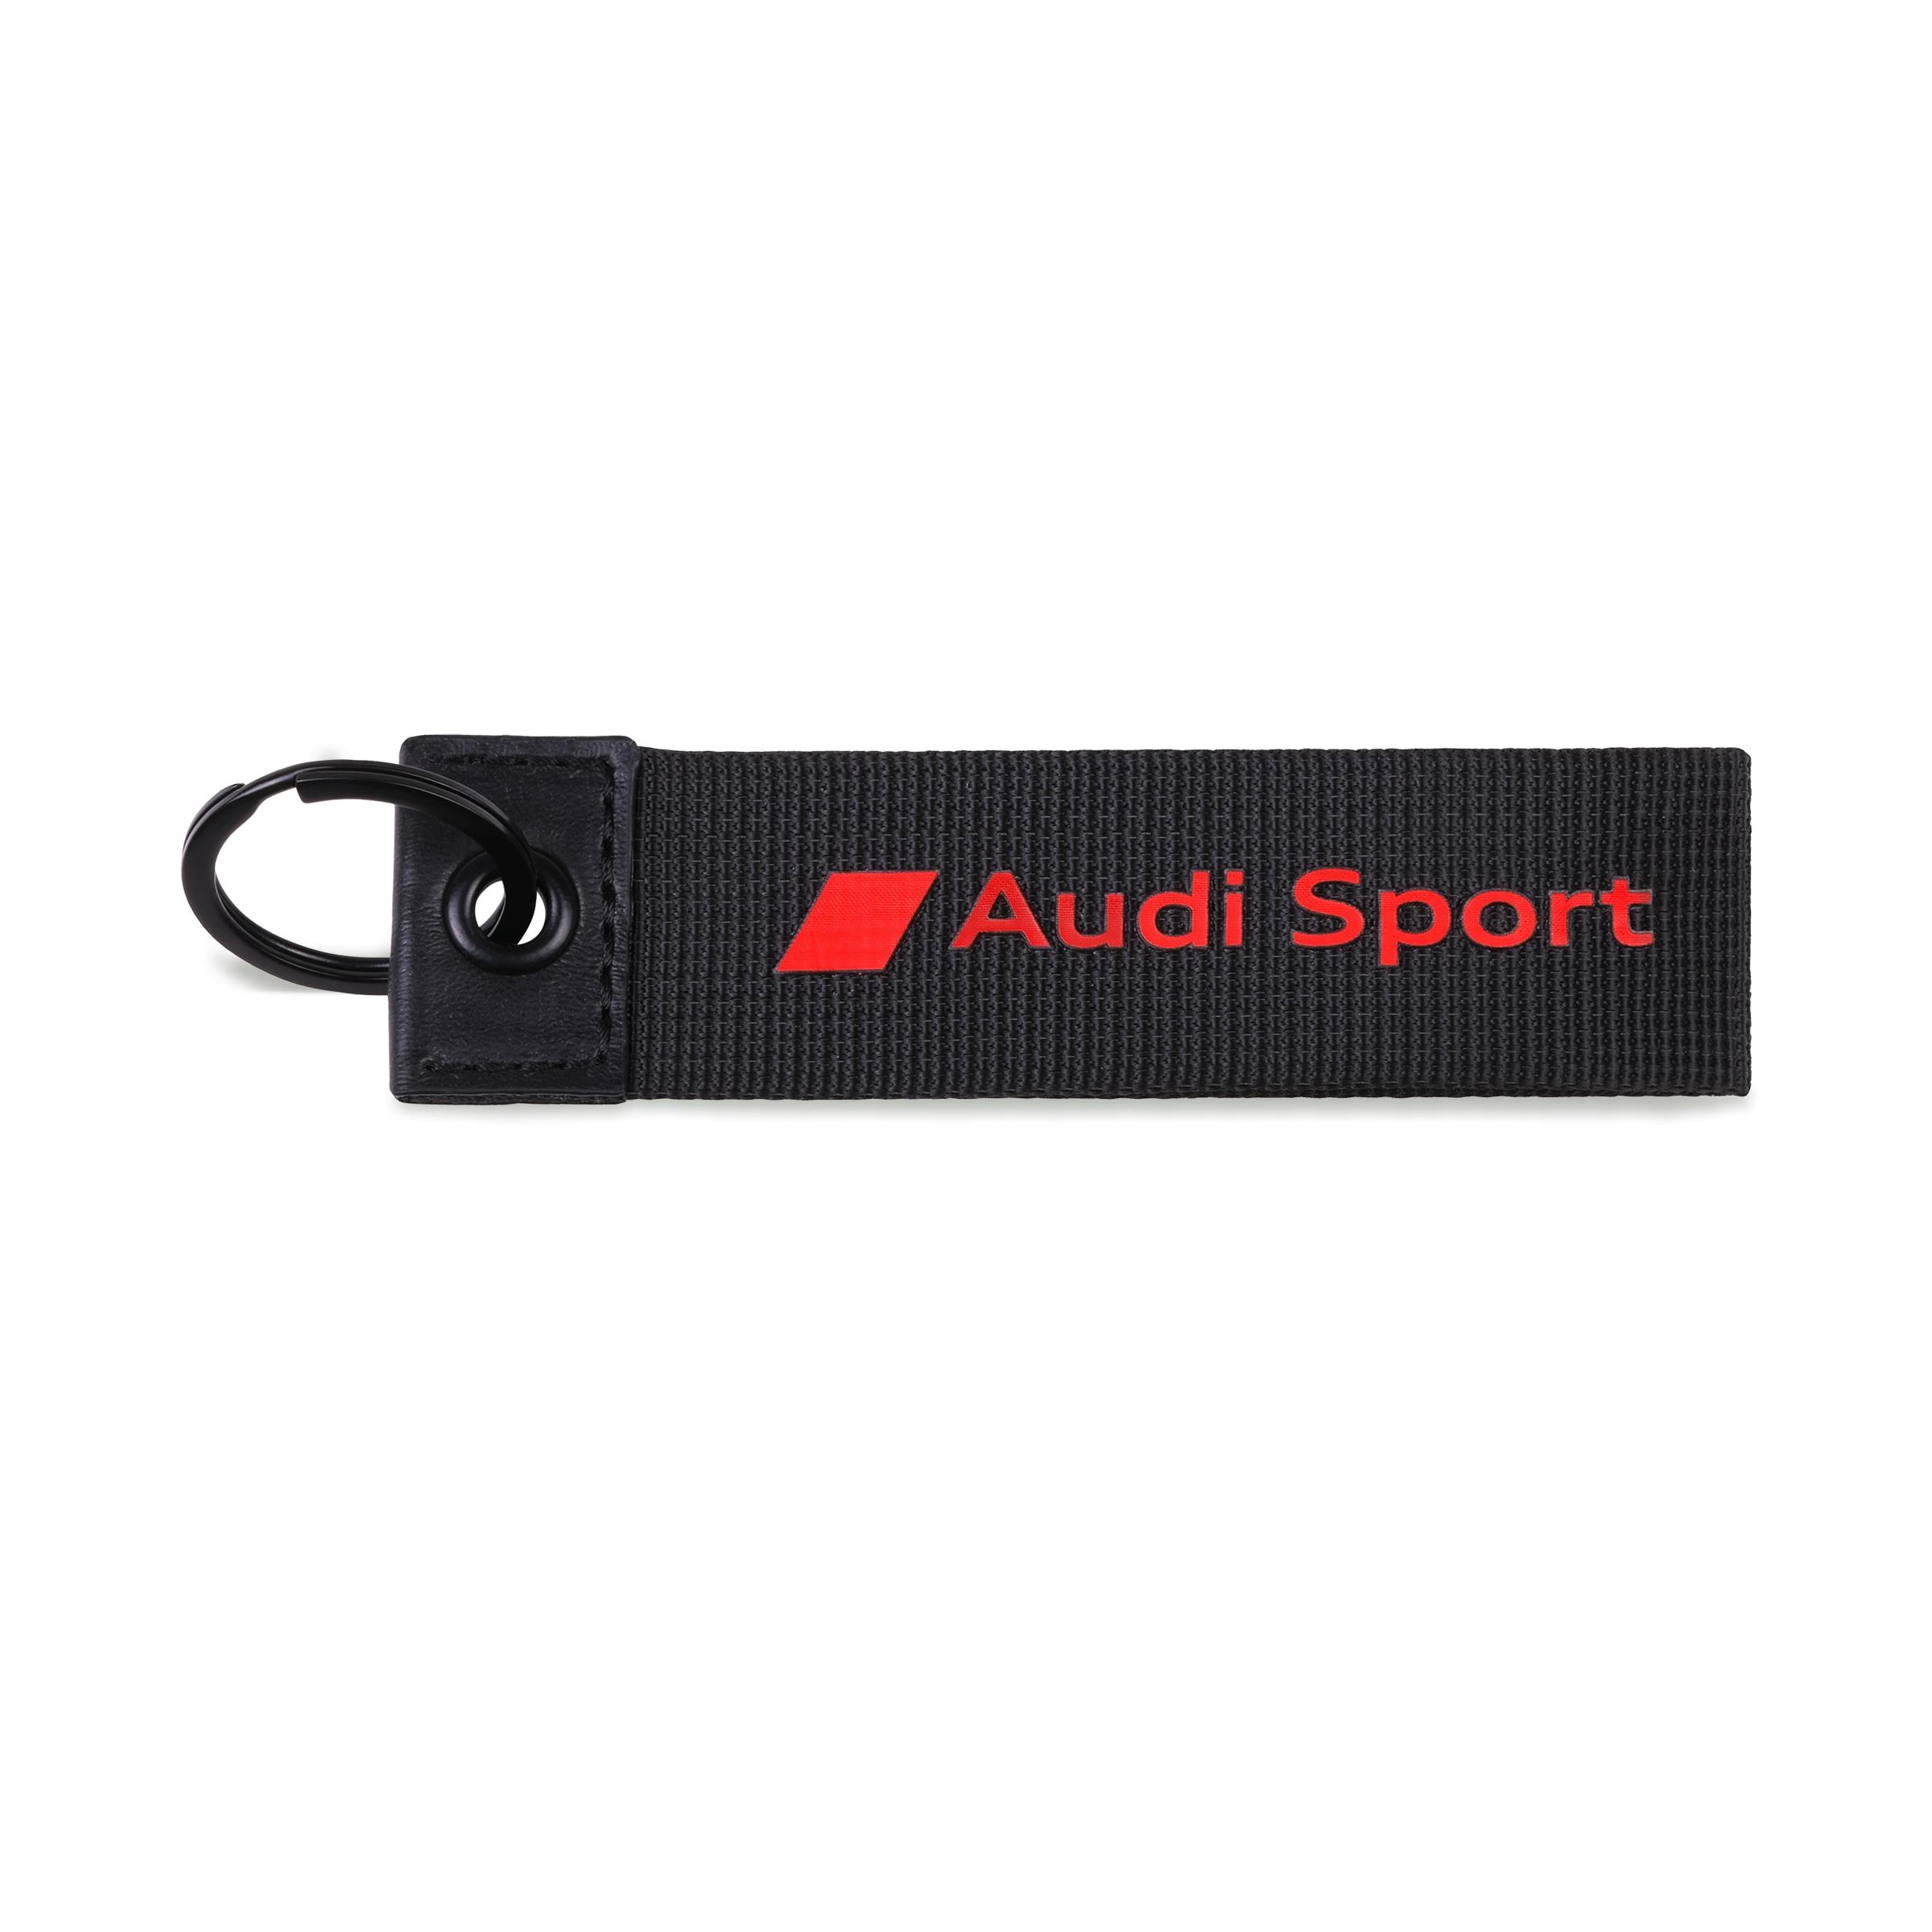 Audi Sport Schlüsselanhänger schwarz/rot 3182200600